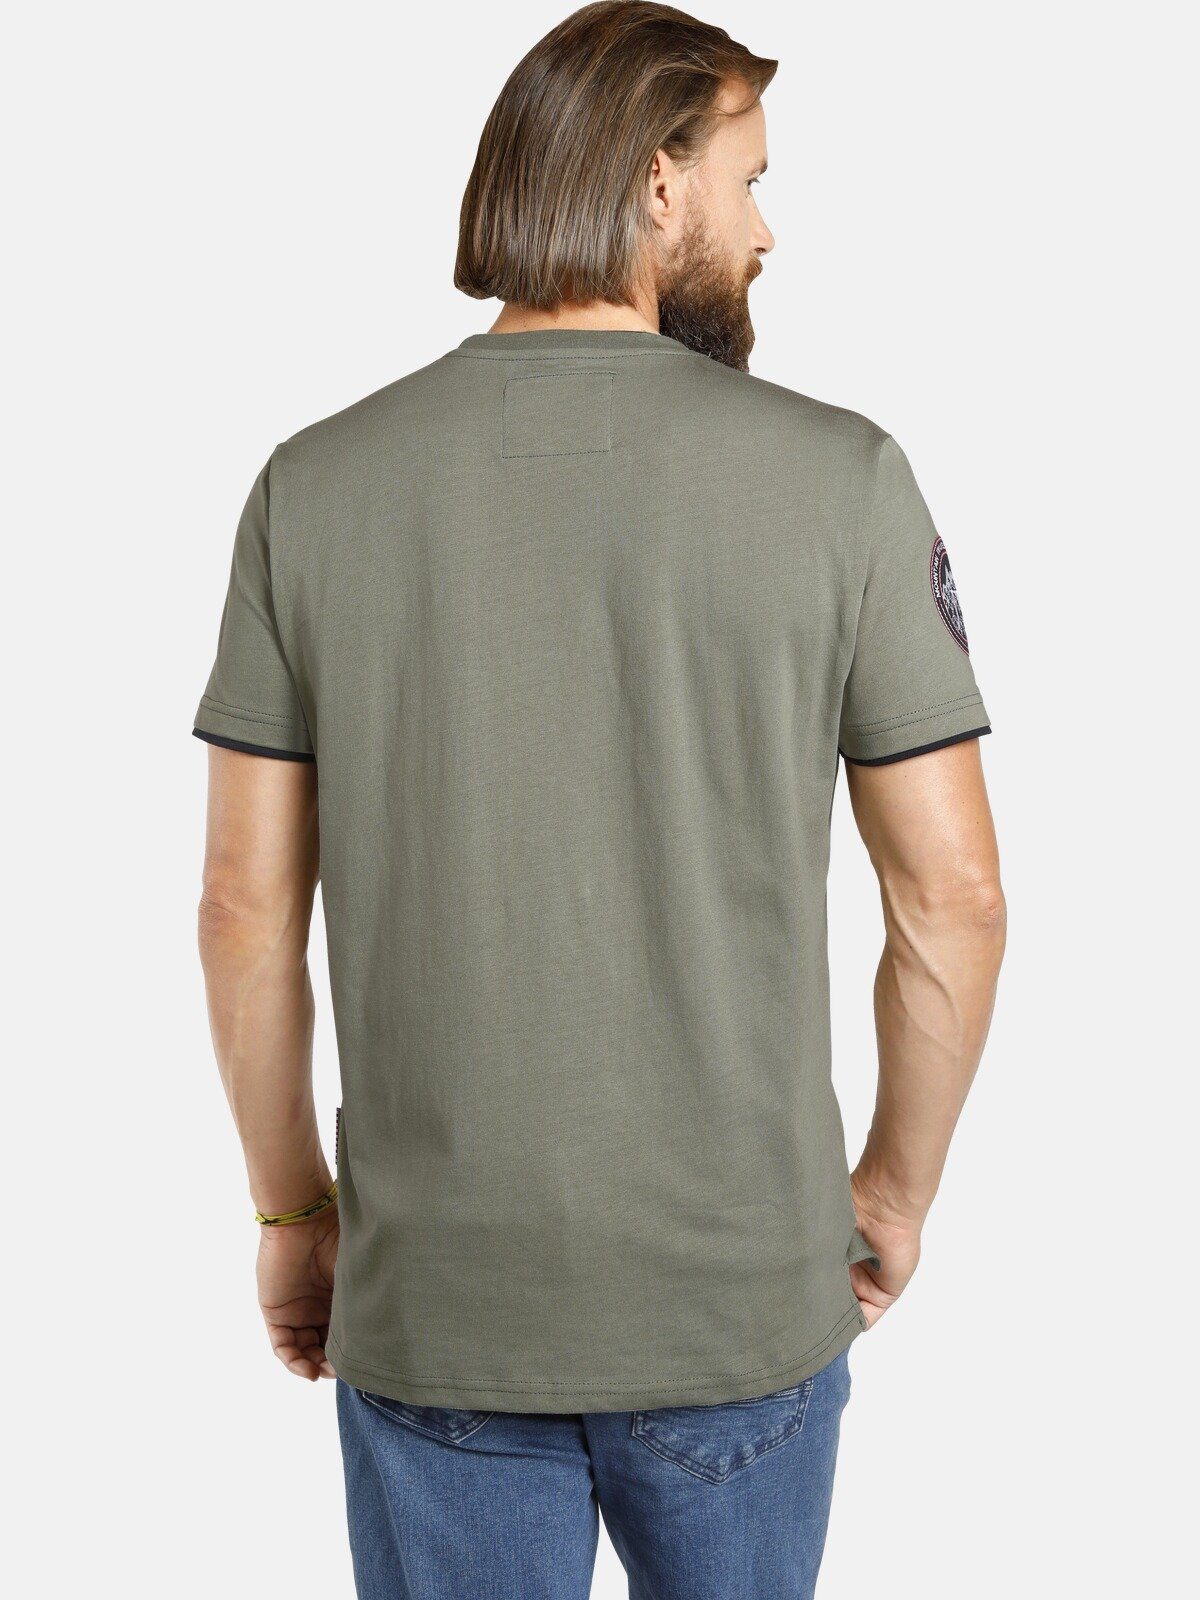 Jan Vanderstorm T-Shirt SÖLVE aus robustem oliv Baumwolljersey